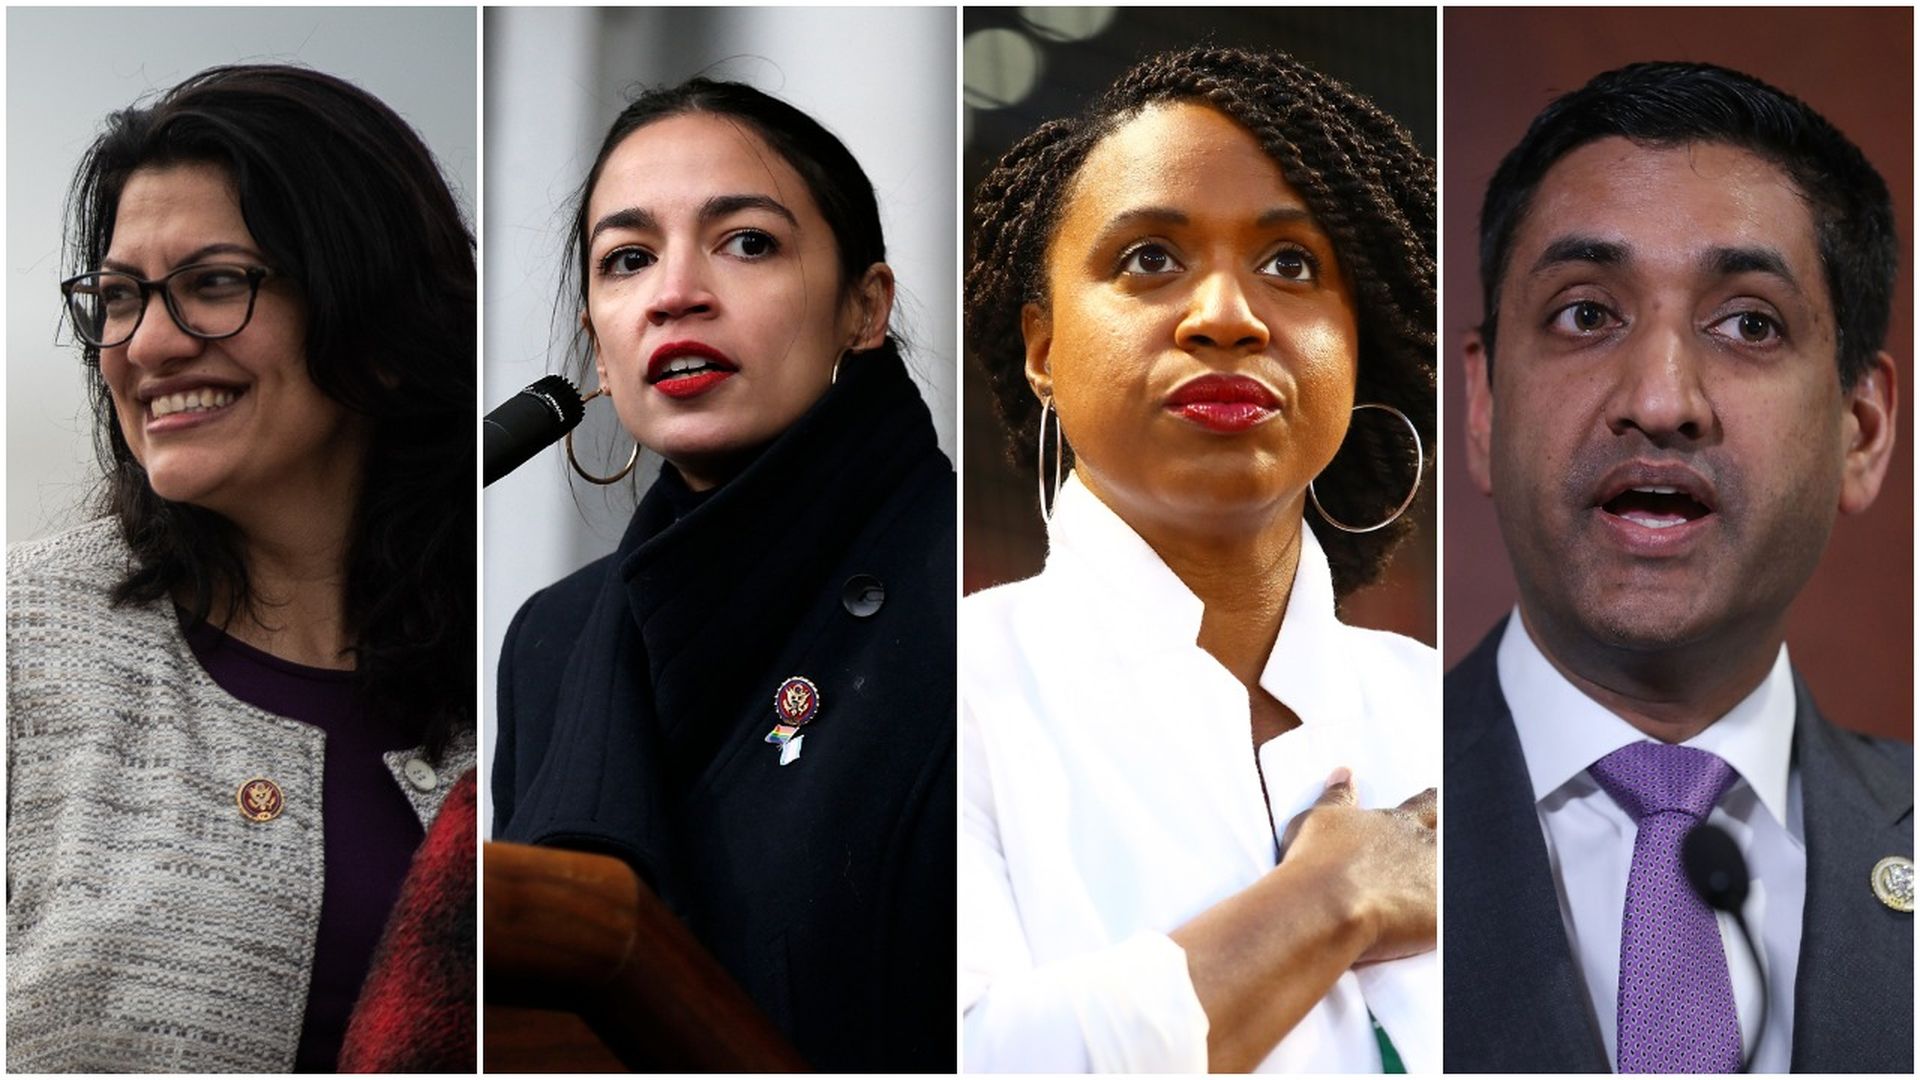 Four progressive Democrats